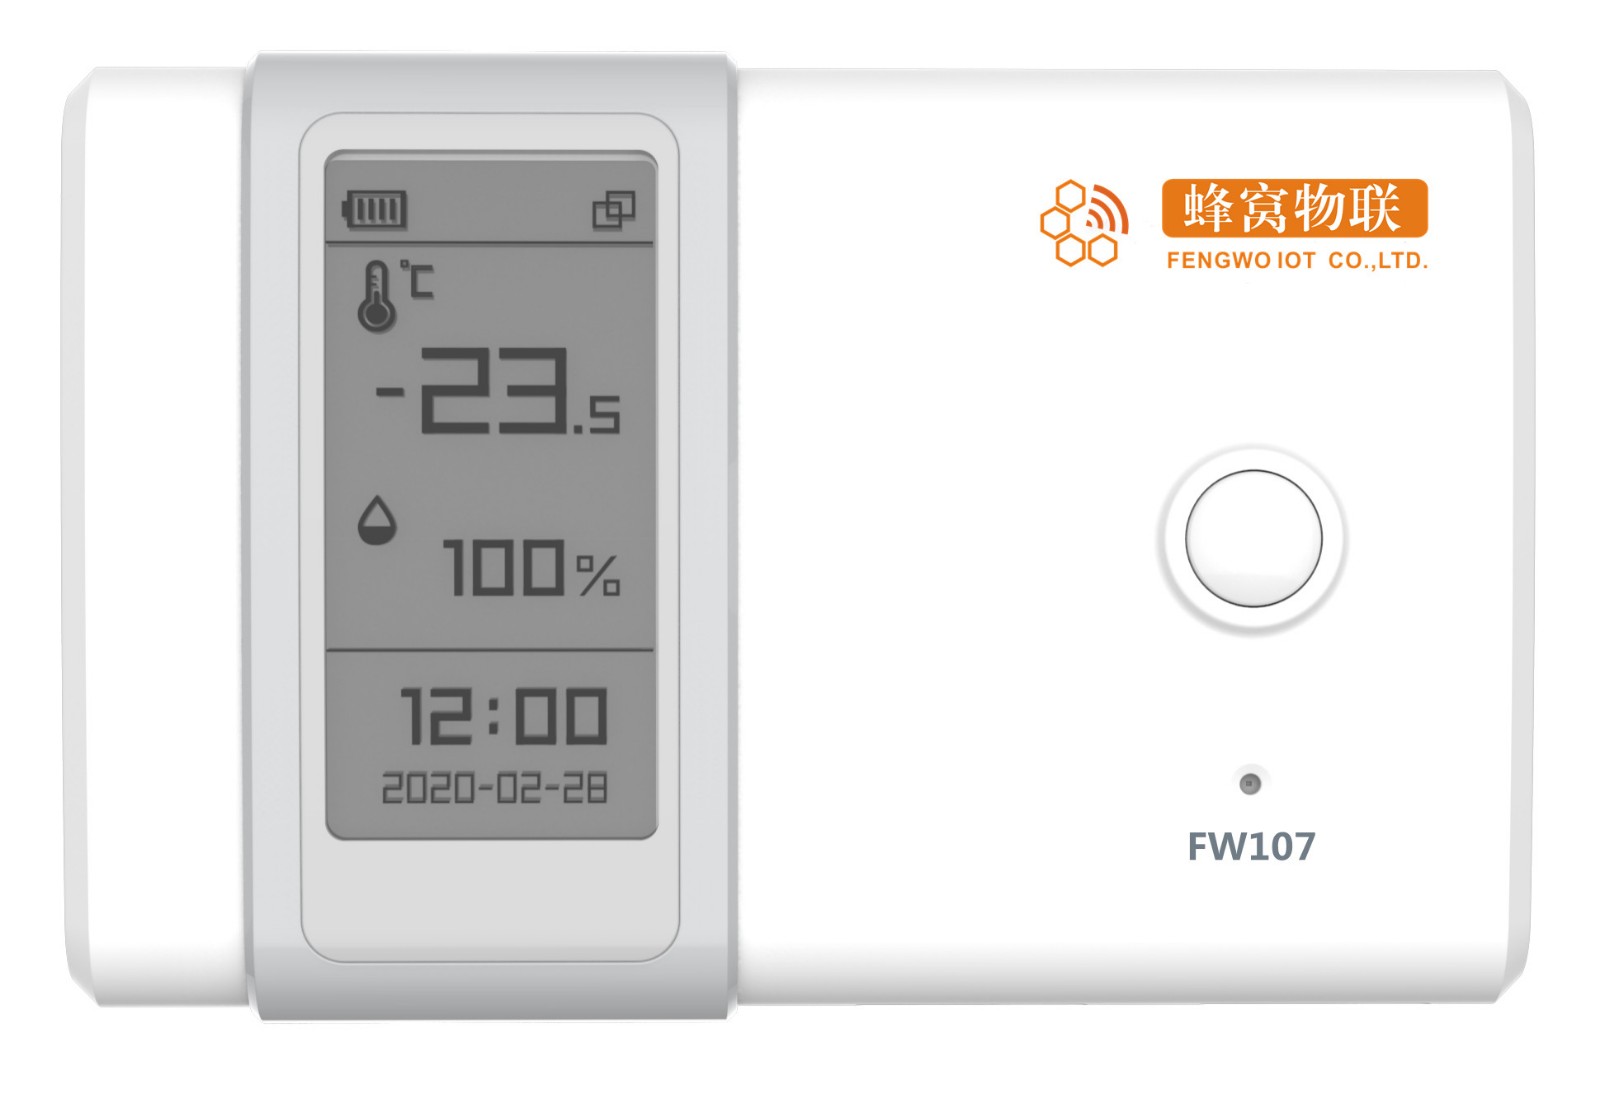 蜂窝物联、FW107-470、多合一传感器、室内传感器、室内环境监测传感器